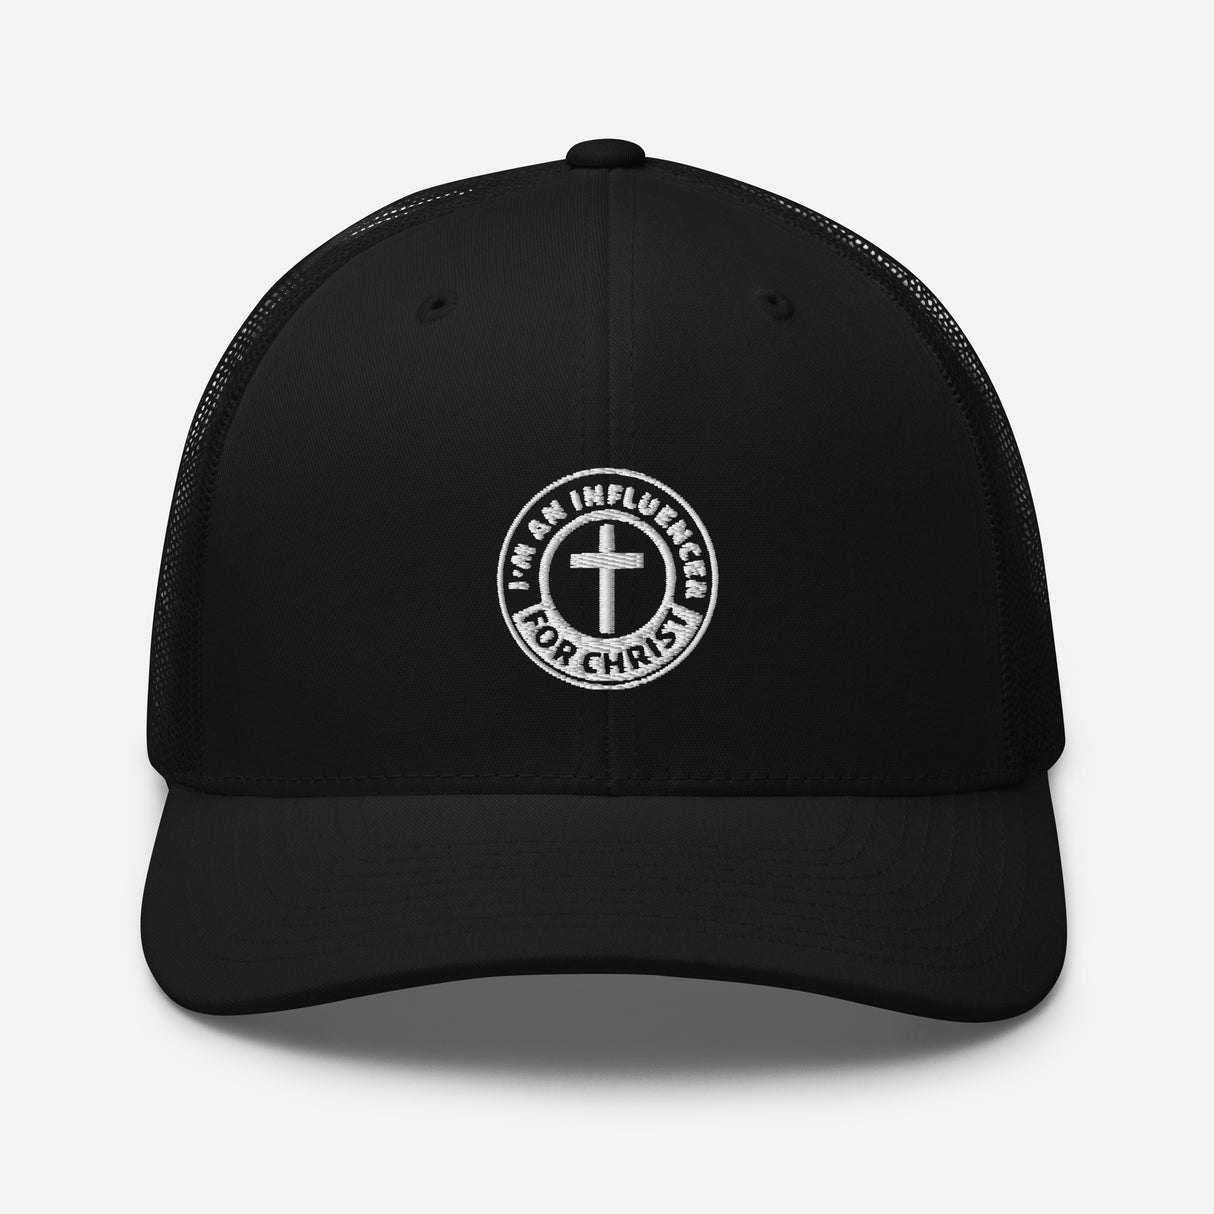 Influencer for Christ Trucker Hat